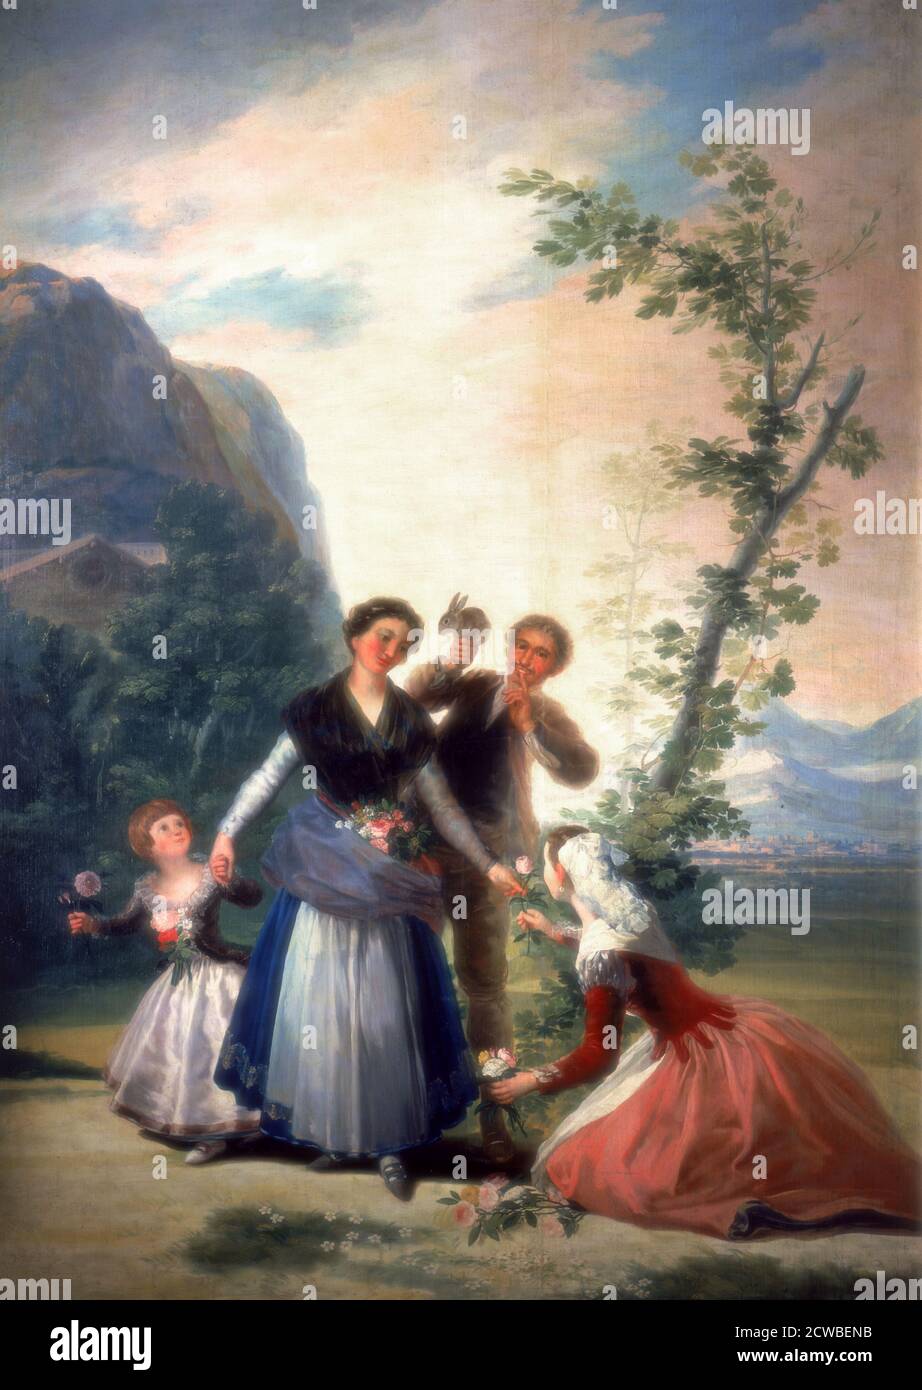 The Florists or Spring, 1786. Artiste: Francisco Goya. Francisco Goya (1746-1828) était un artiste espagnol dont les peintures, dessins et gravures reflétaient des bouleversements historiques contemporains et influençaient d'importants peintres des XIXe et XXe siècles. Banque D'Images